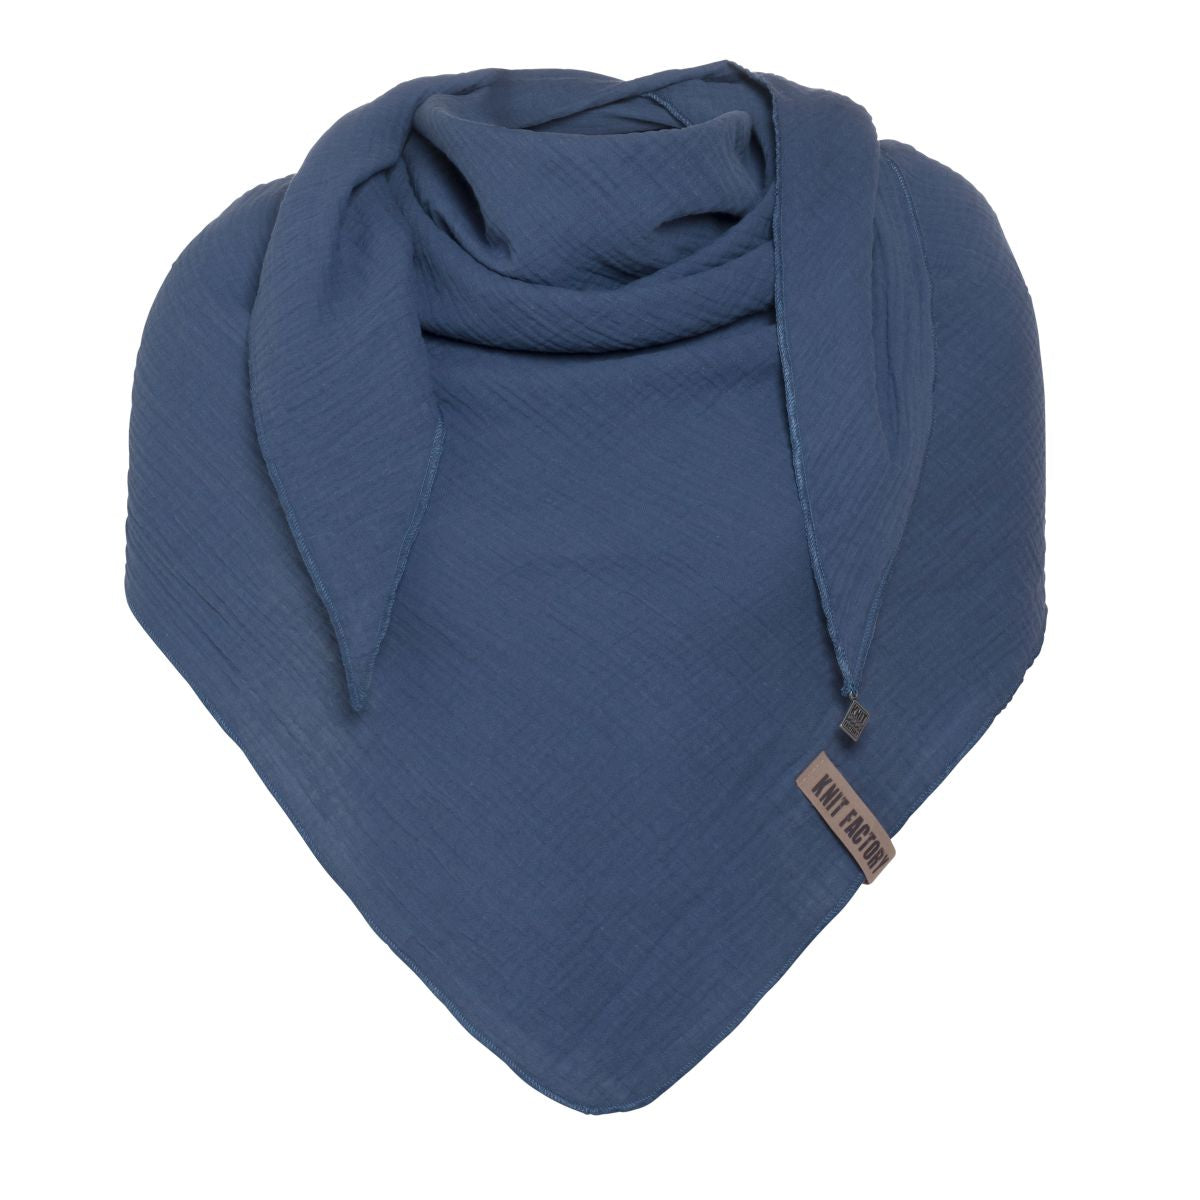 Knit factory | Liv triangle scarf indigo